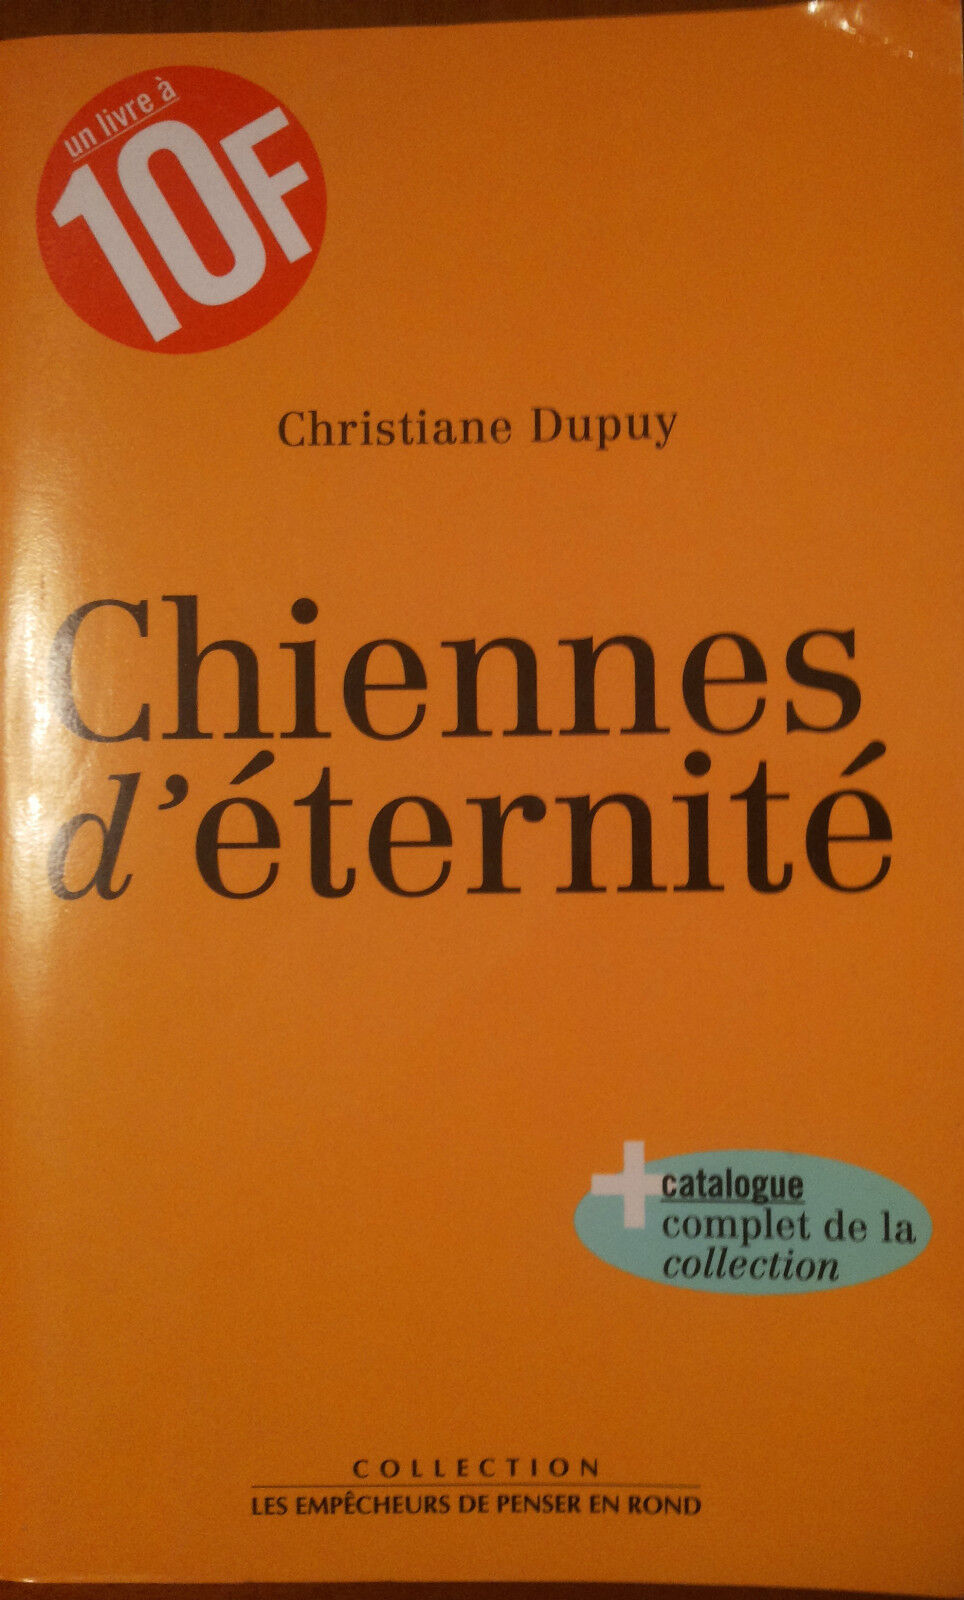 Chiennes d'eternit? - Dupuy, Christiane - Empecheurus,1998 - A